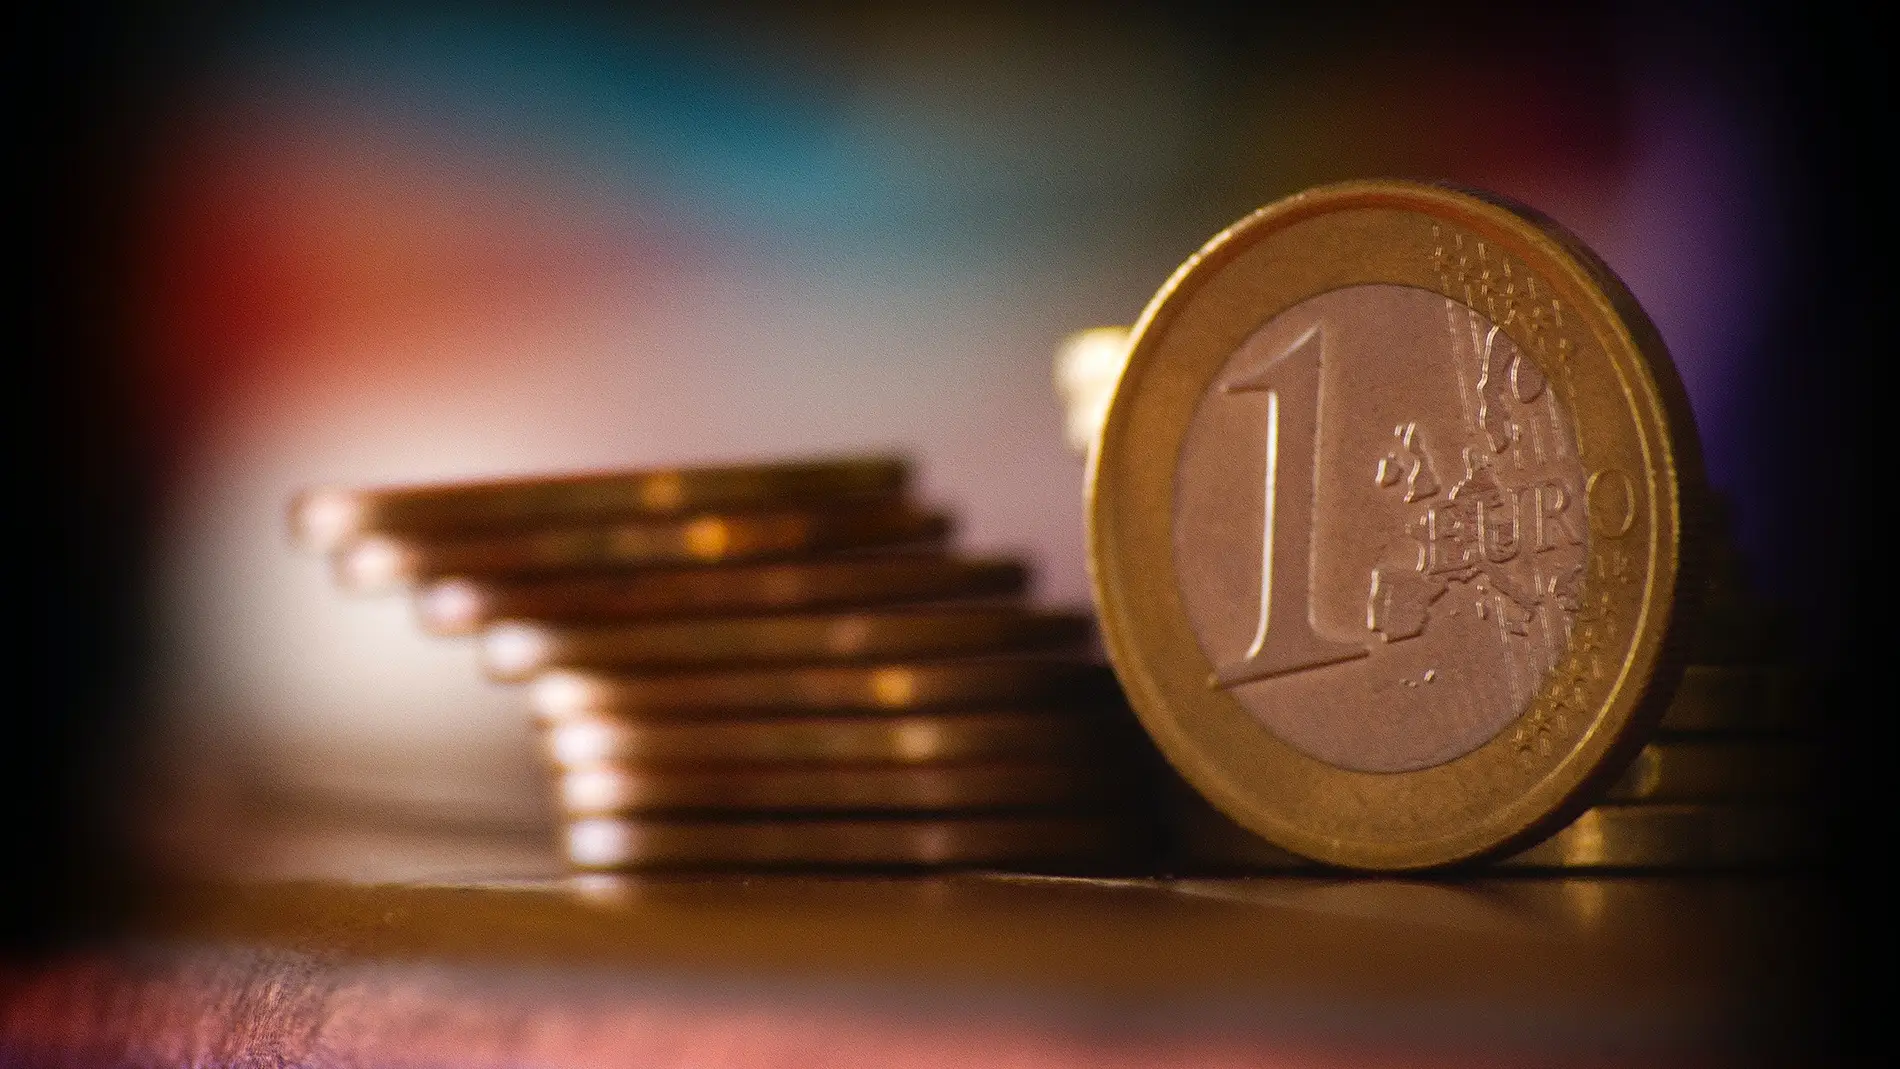 La Policía alerta de un engaño con billetes de 20 euros falsos